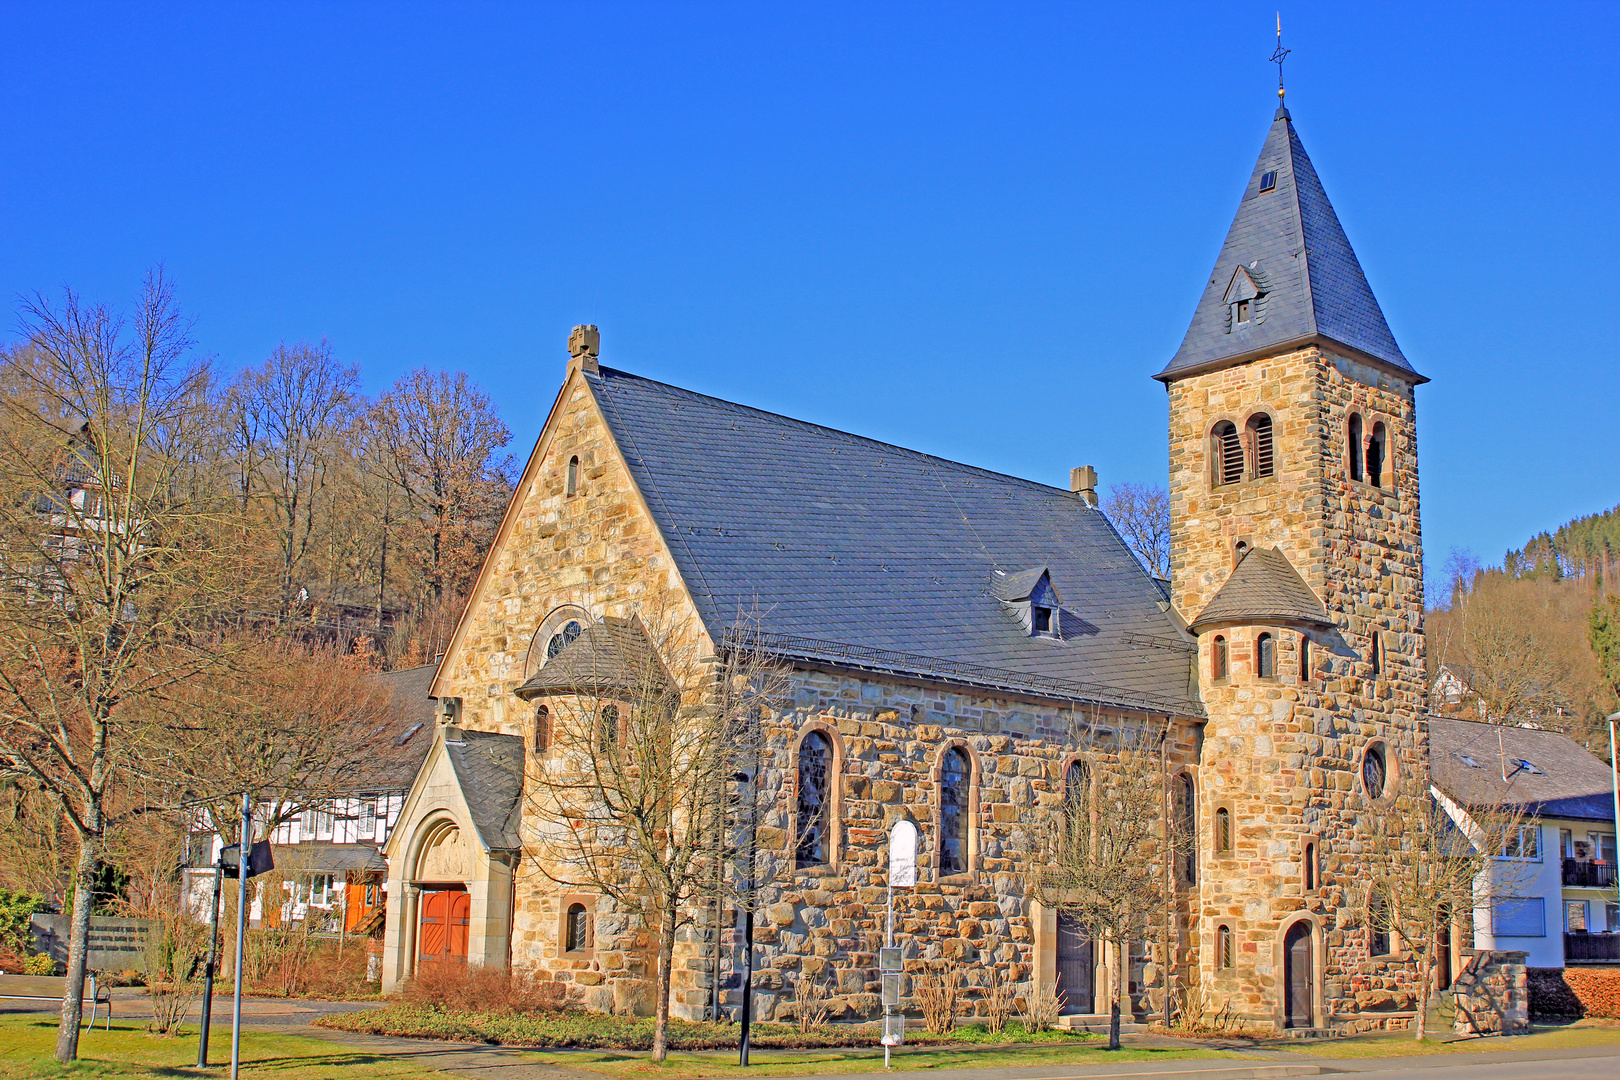 St. Elisabeth Kirche in Kirchhundem-Benolpe